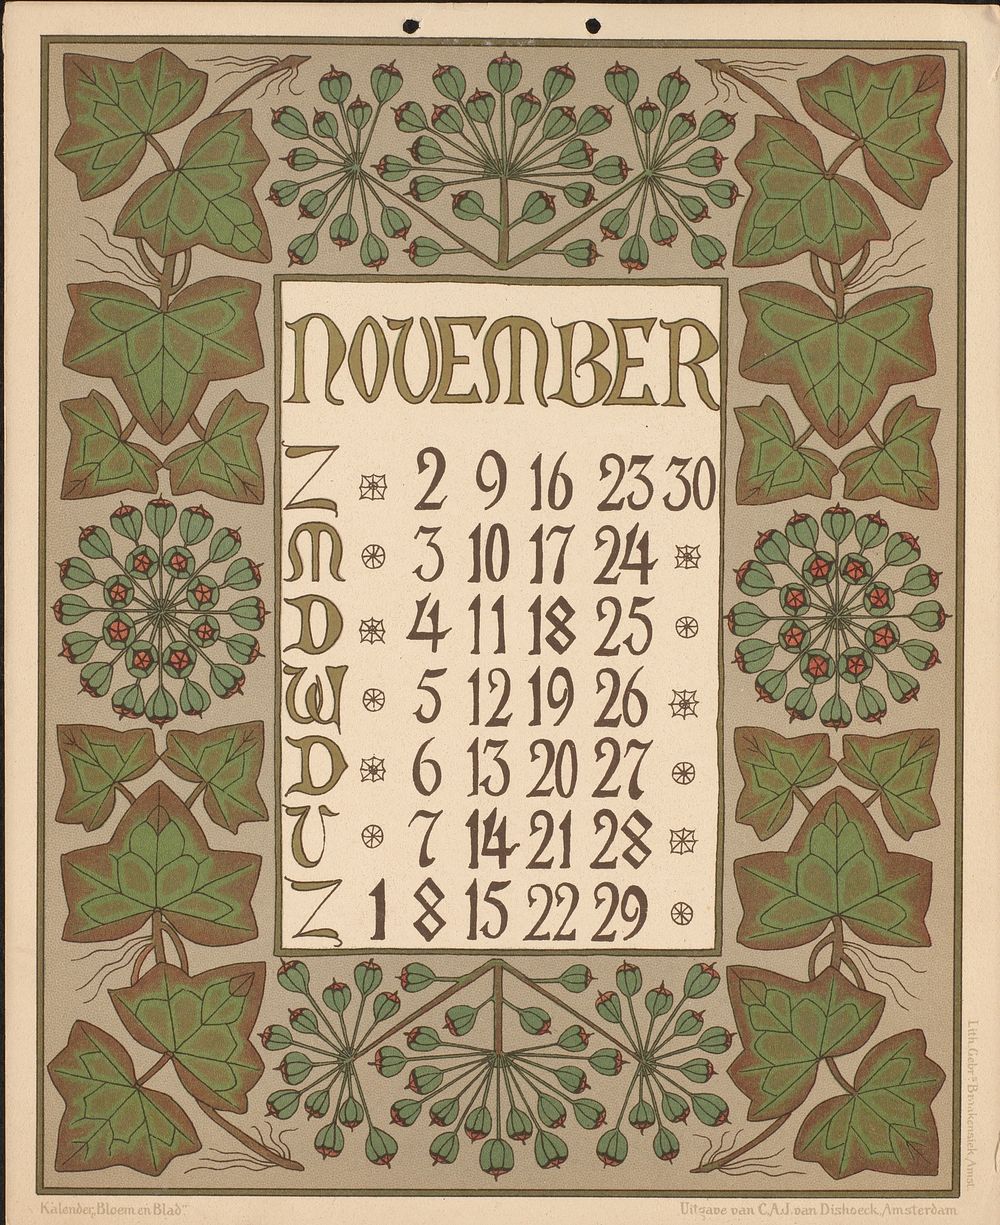 Kalenderblad voor november 1902 (1901) by Gebroeders Braakensiek, Netty van der Waarden, Gebroeders Braakensiek and C A J…